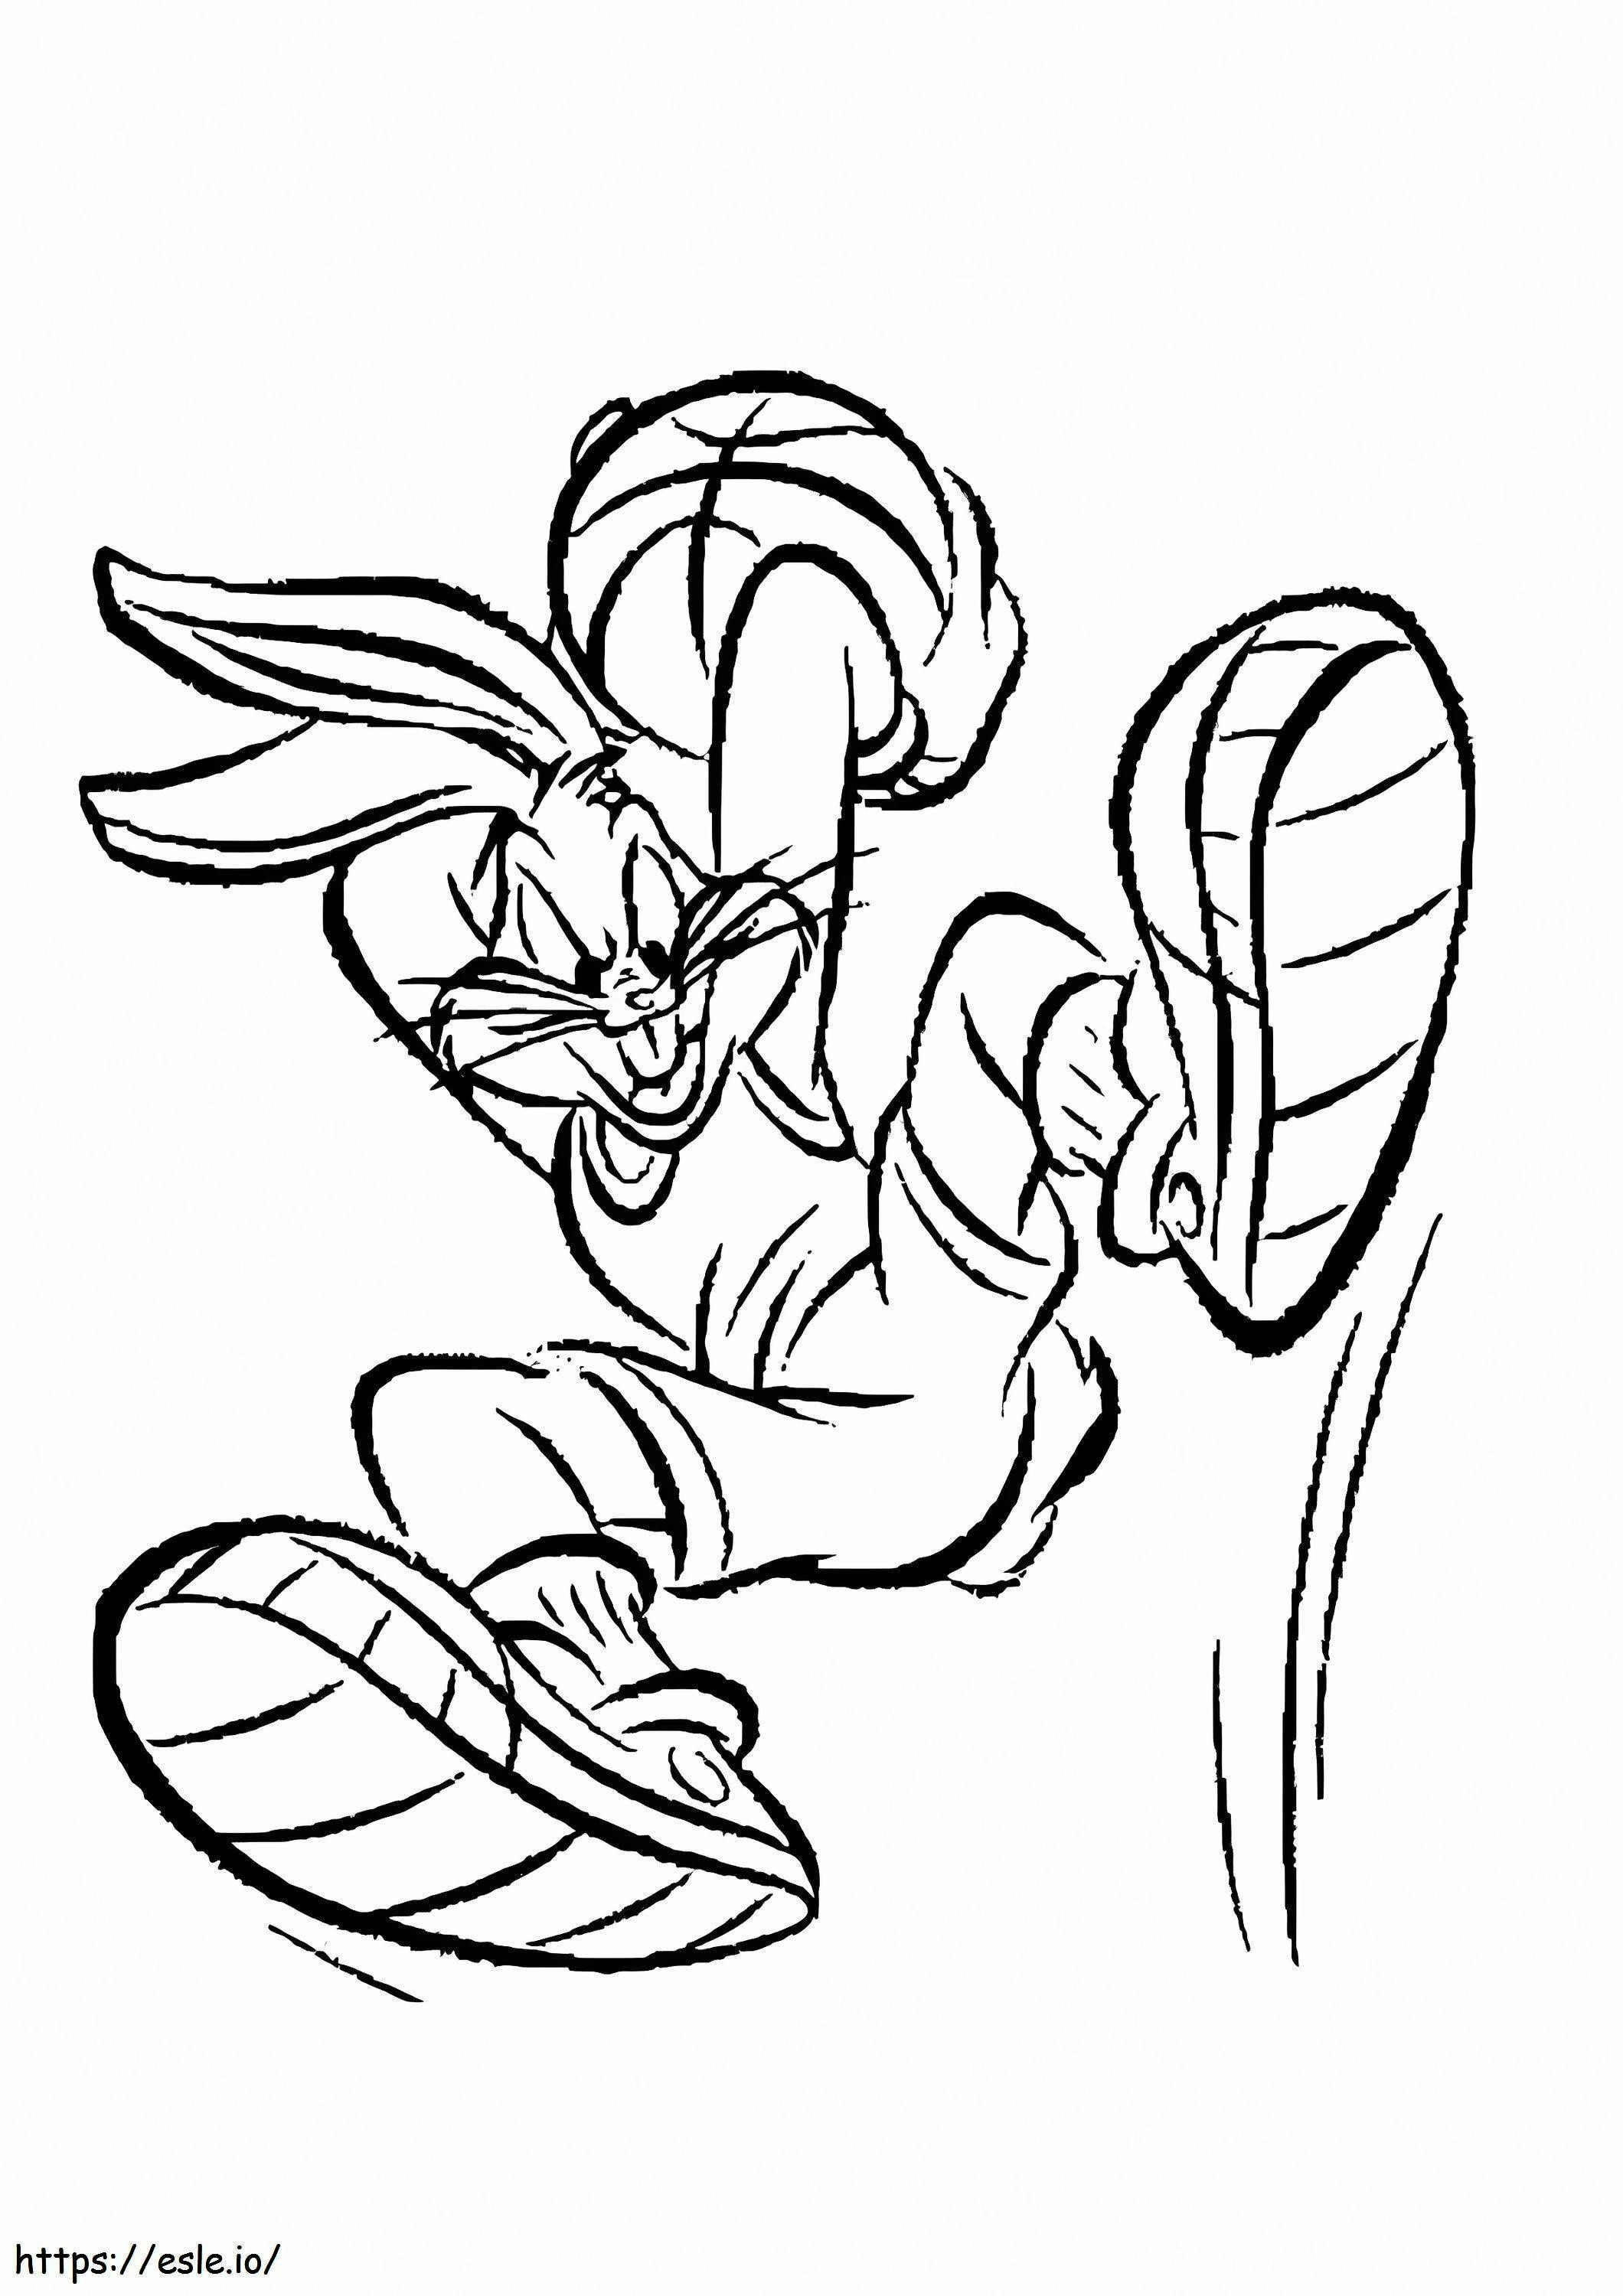 Lustige Bugs Bunny-Zeichnung ausmalbilder